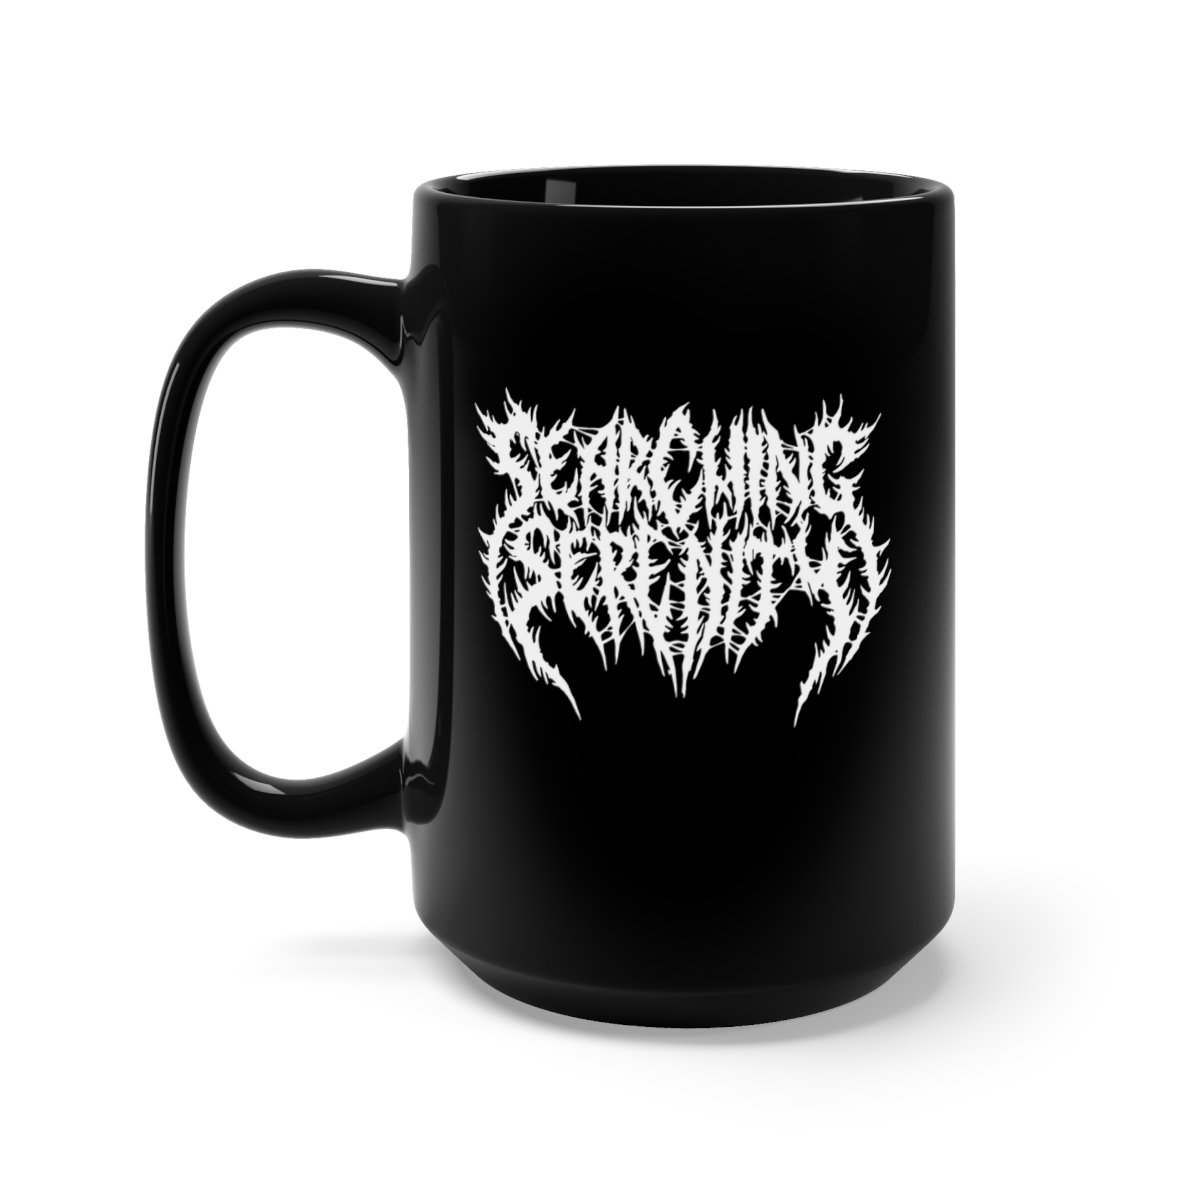 Searching Serenity – 15oz Black Mug